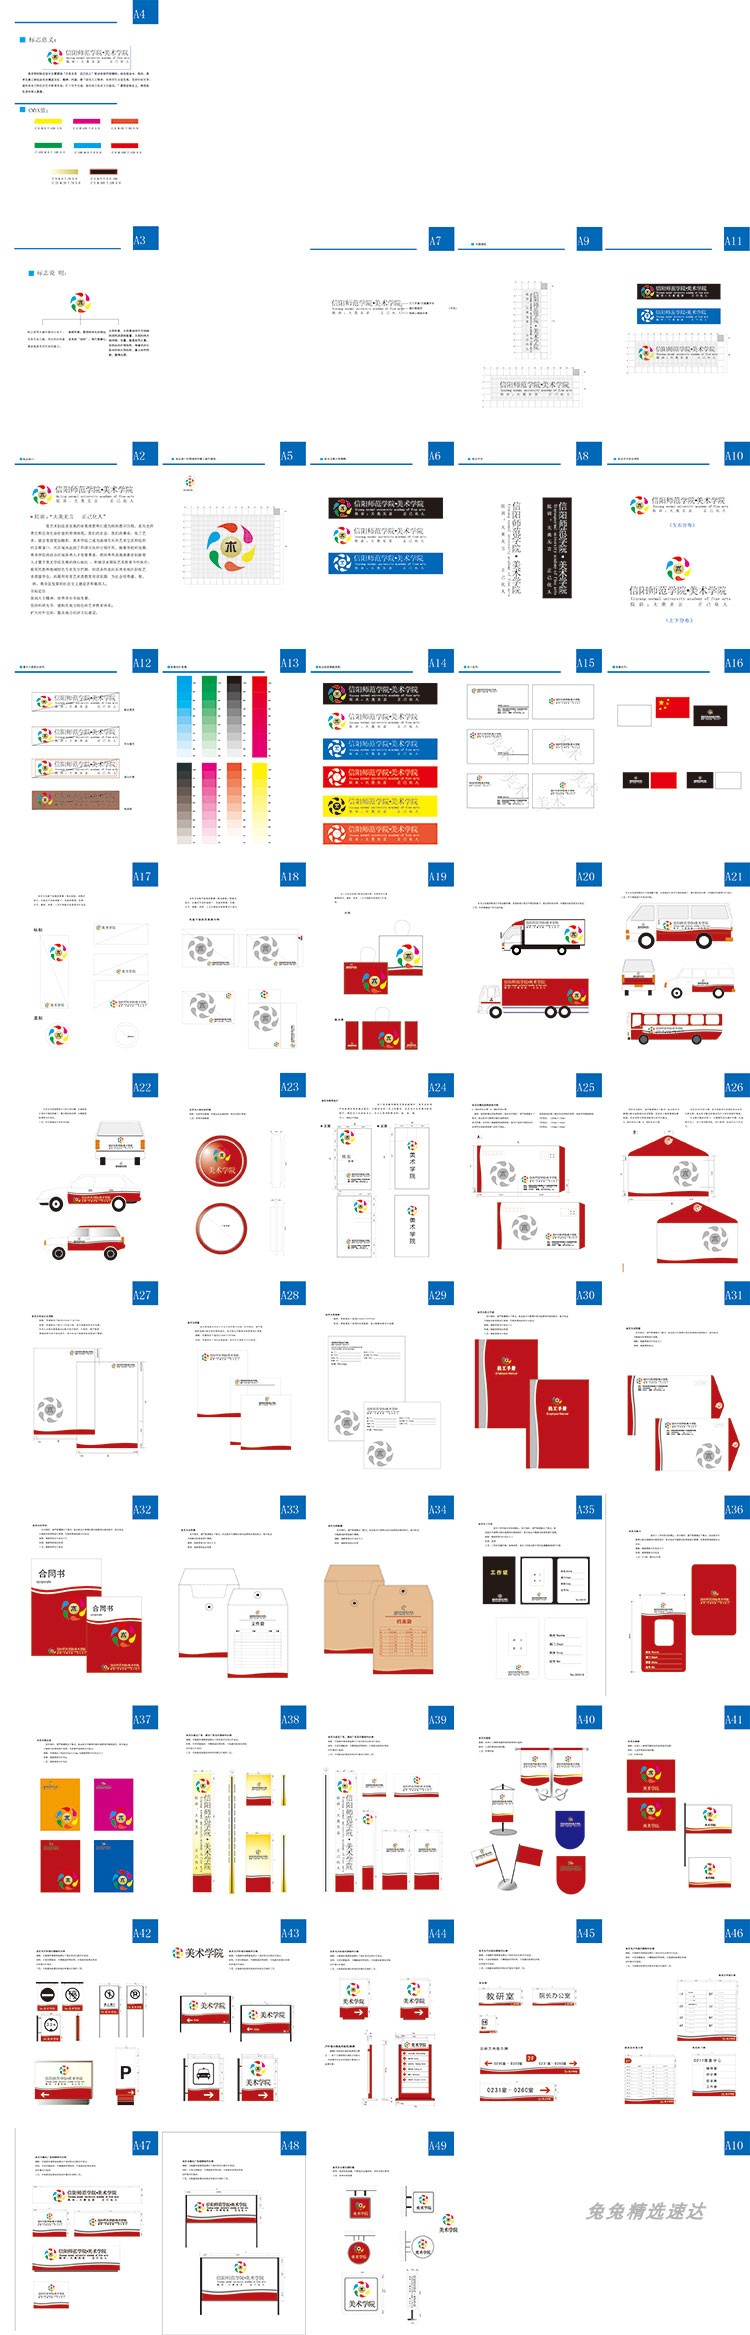 公司企业VI视觉应用设计全套手册模板品牌酒店AI格式导视素材 第58张